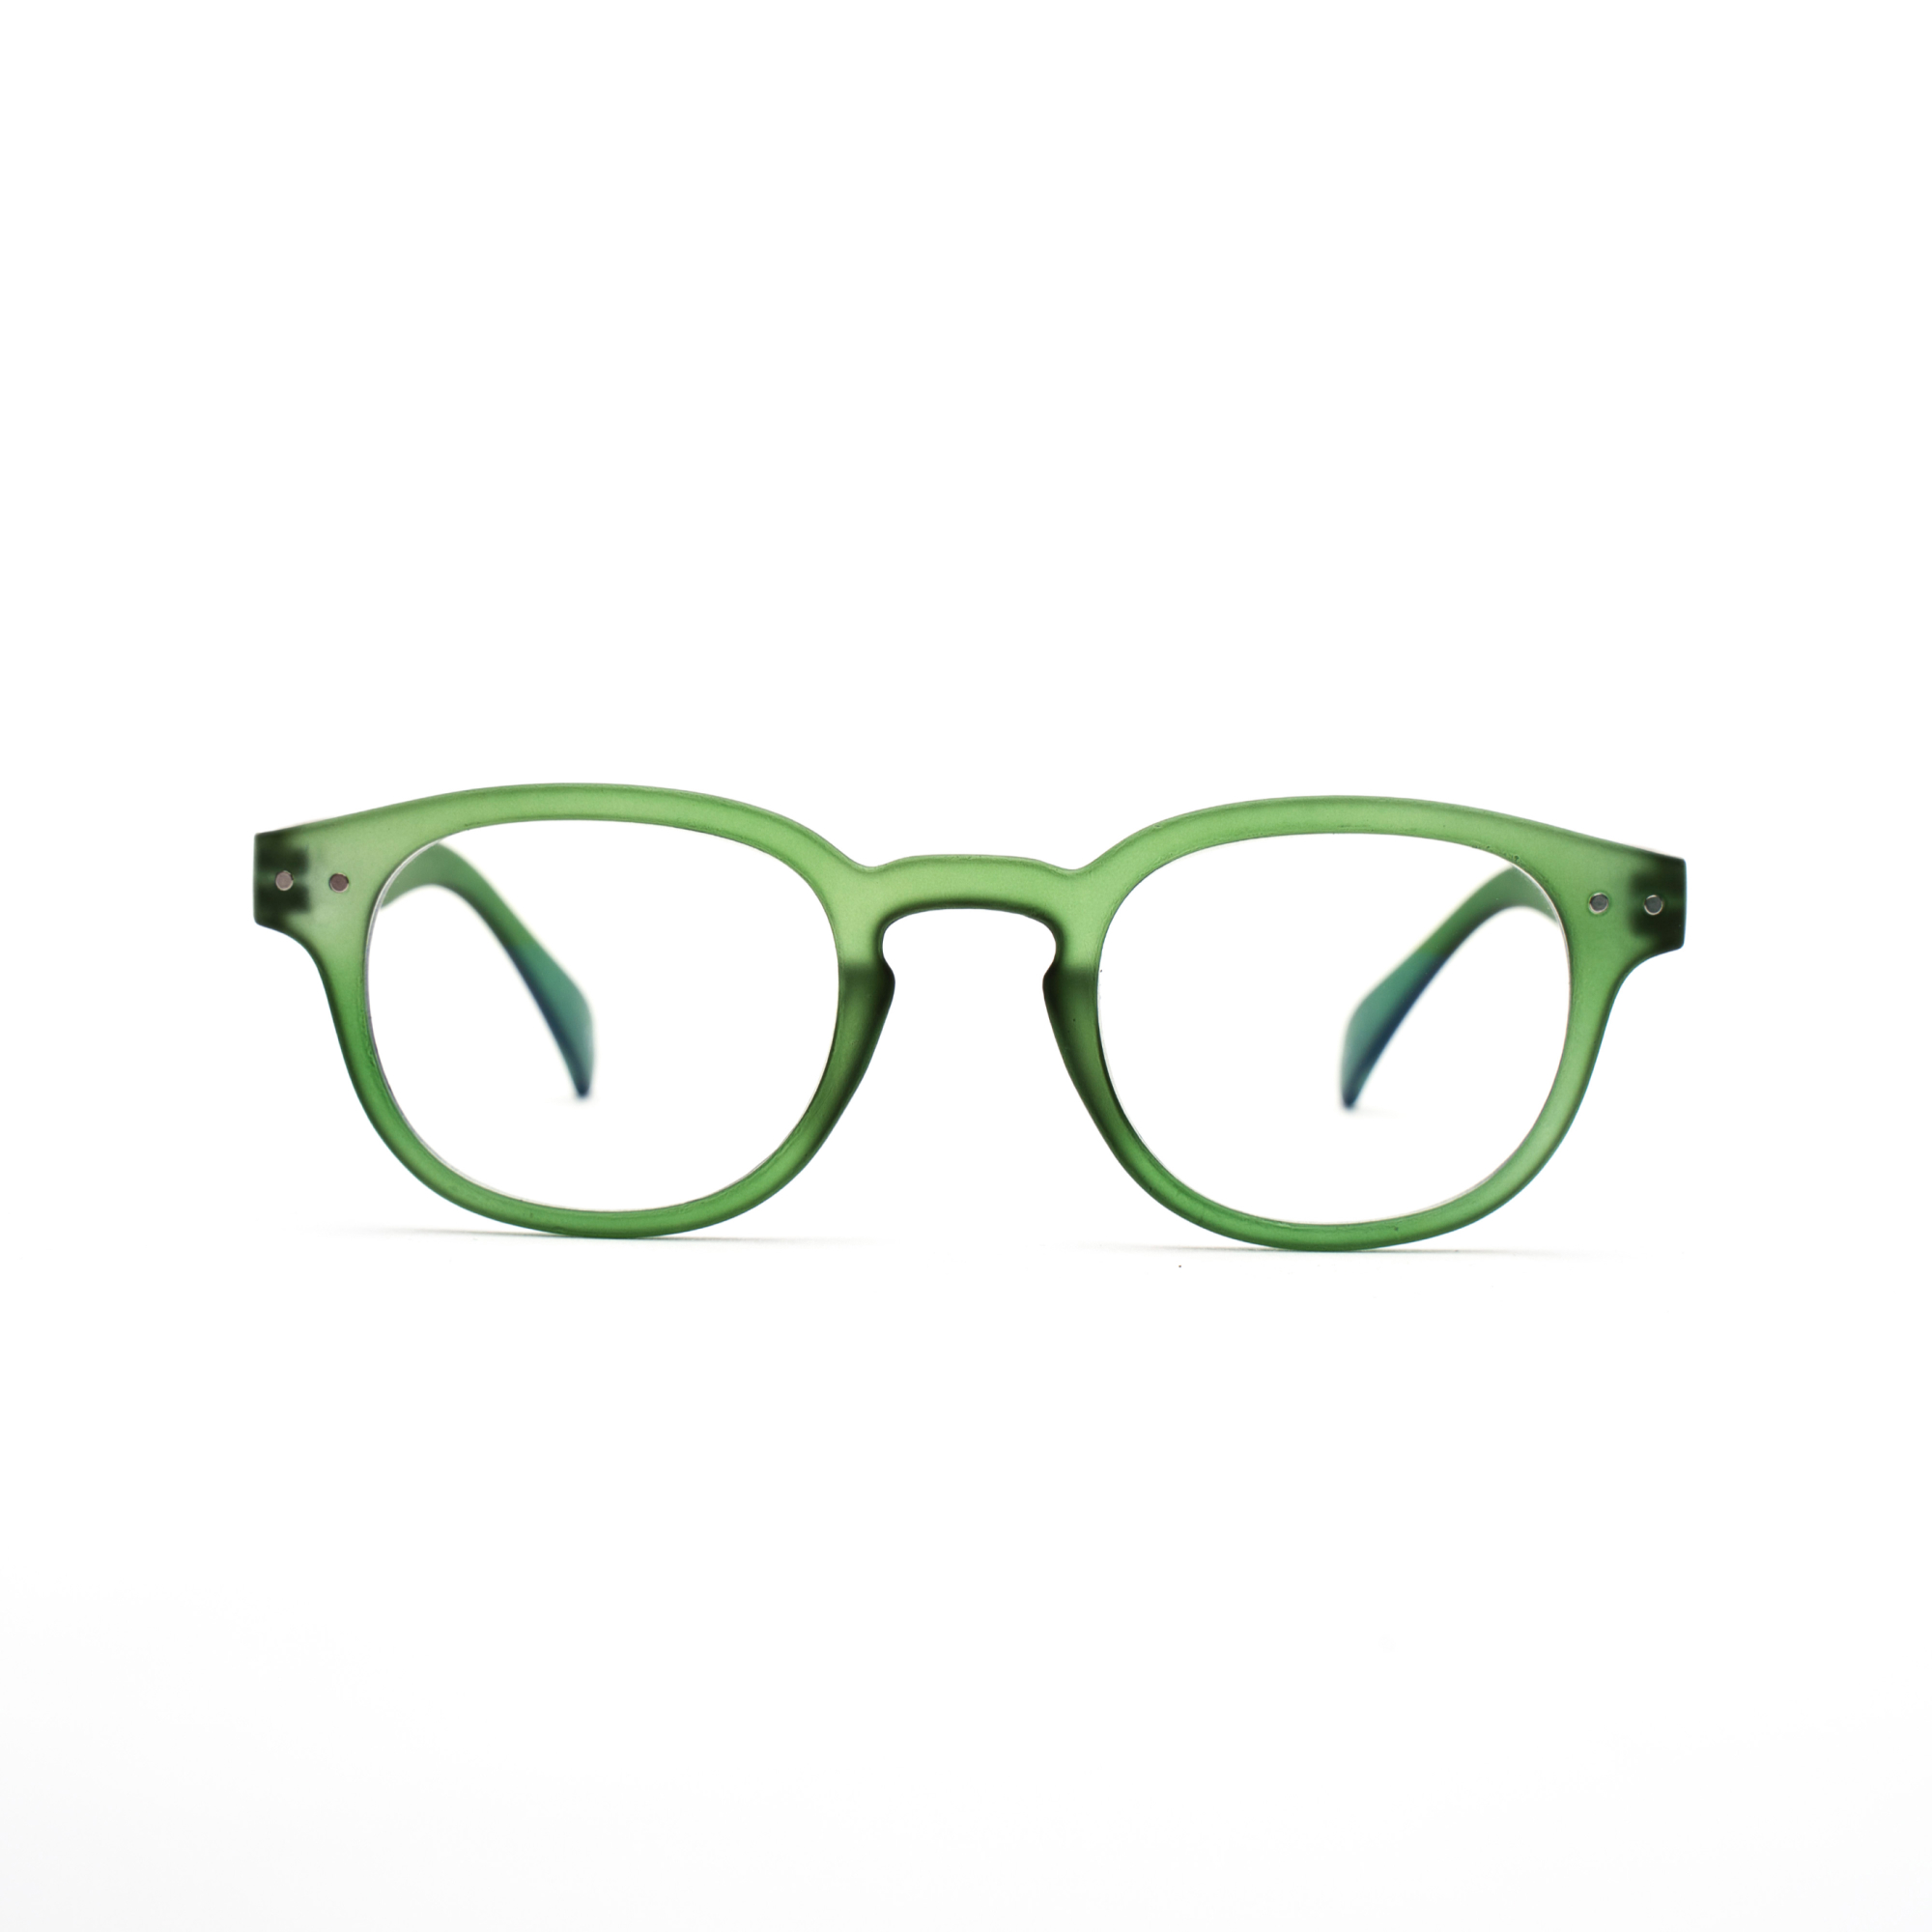 Men's blue light reading glasses – Anton BlueVision mm - Green